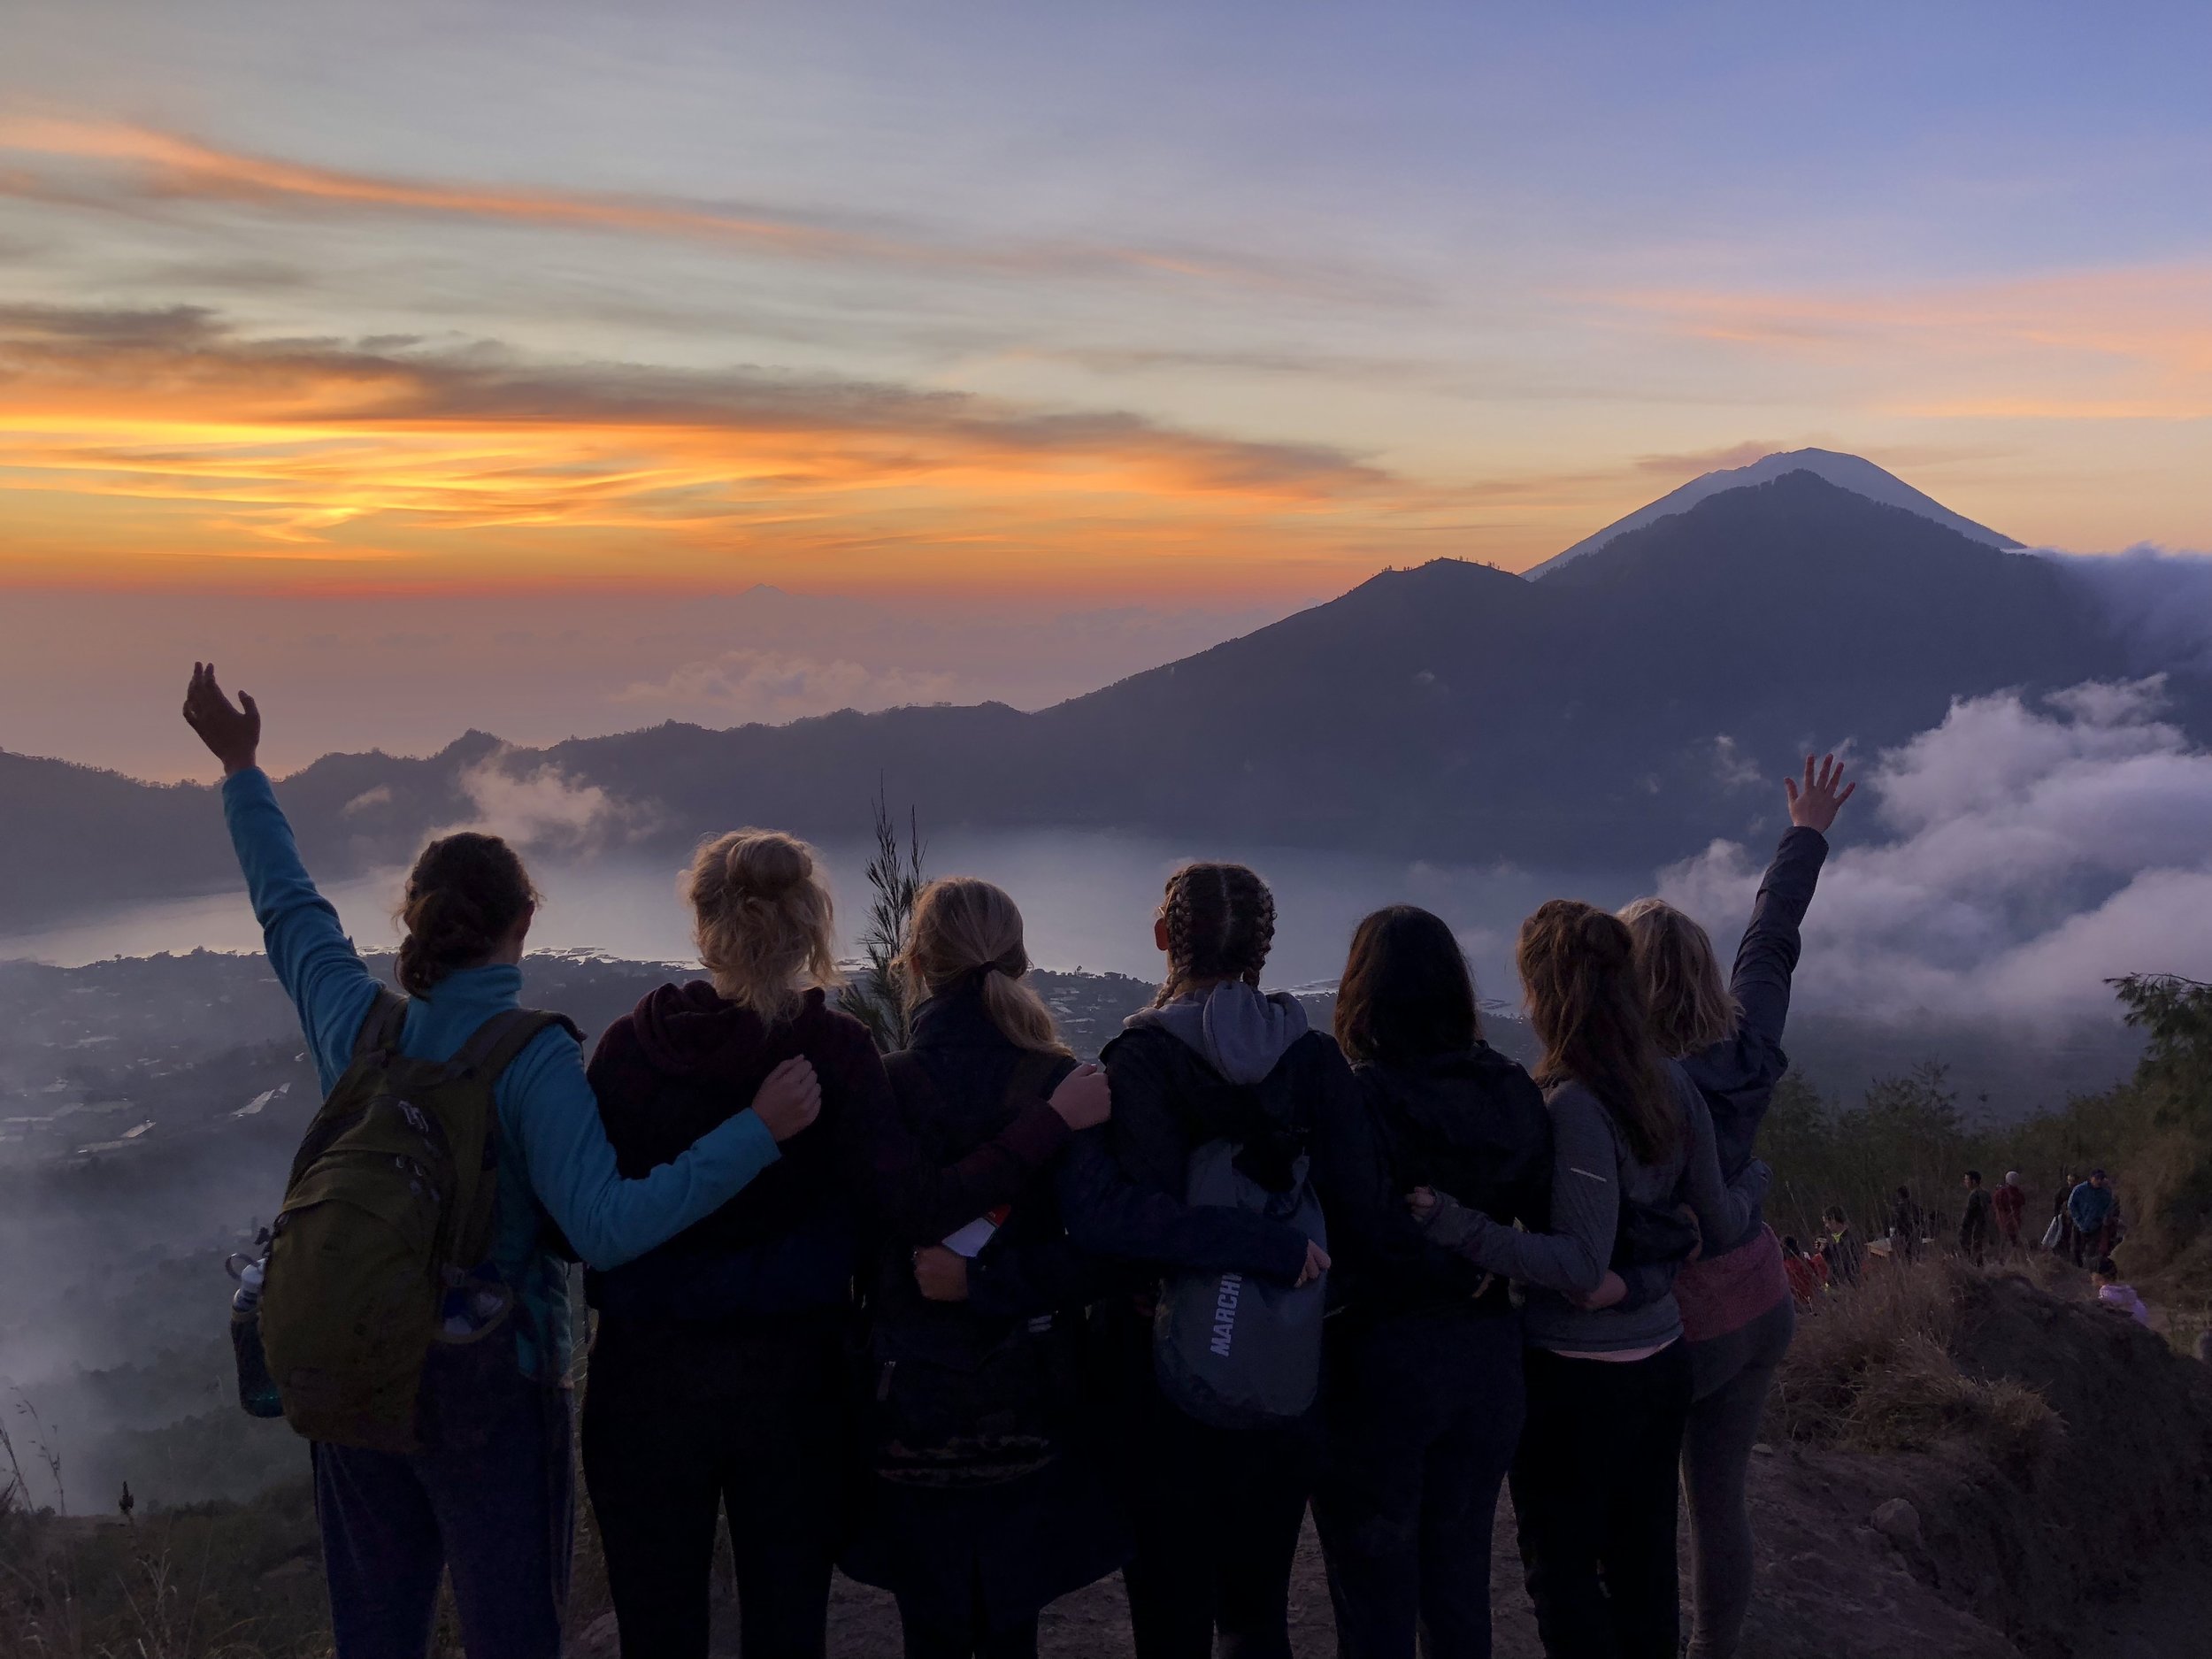 Mt. Batur Sunrise Hike in Bali, Indonesia